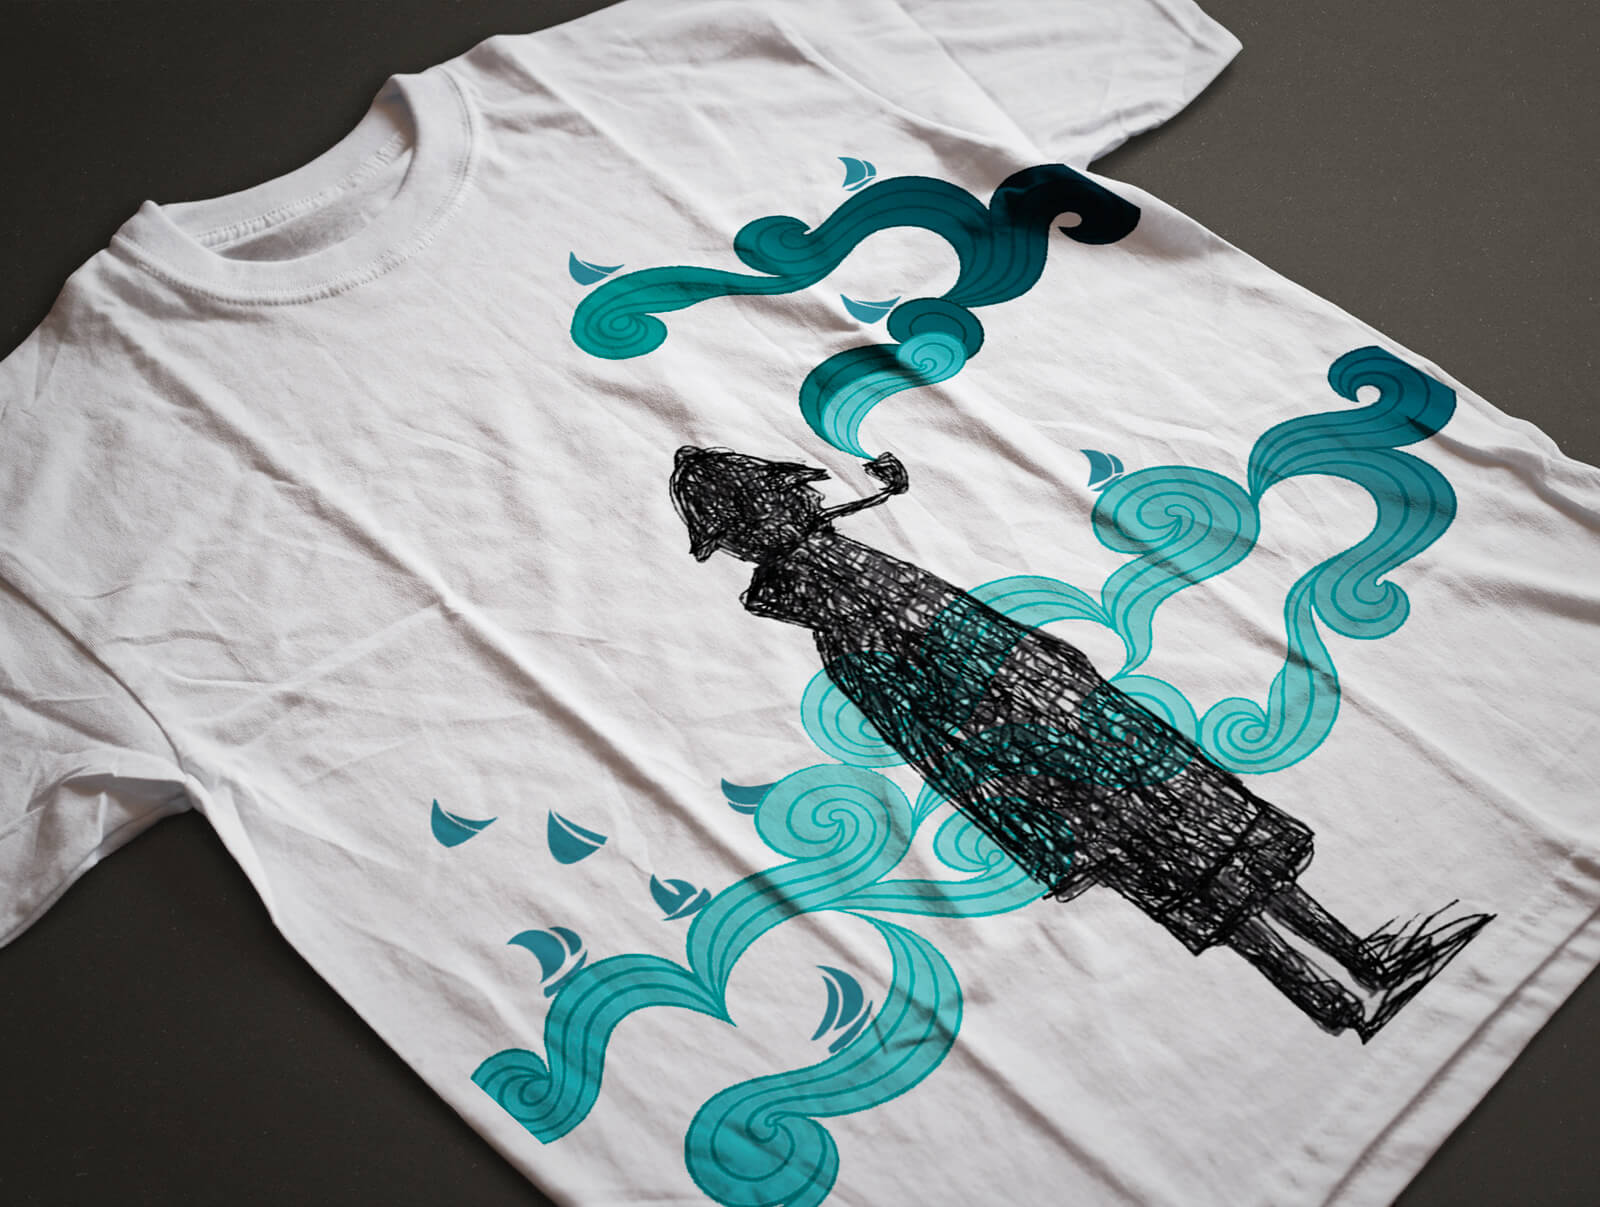 progetto per t-shirt stampata sul fronte, illustrazione diadestudio arco trento